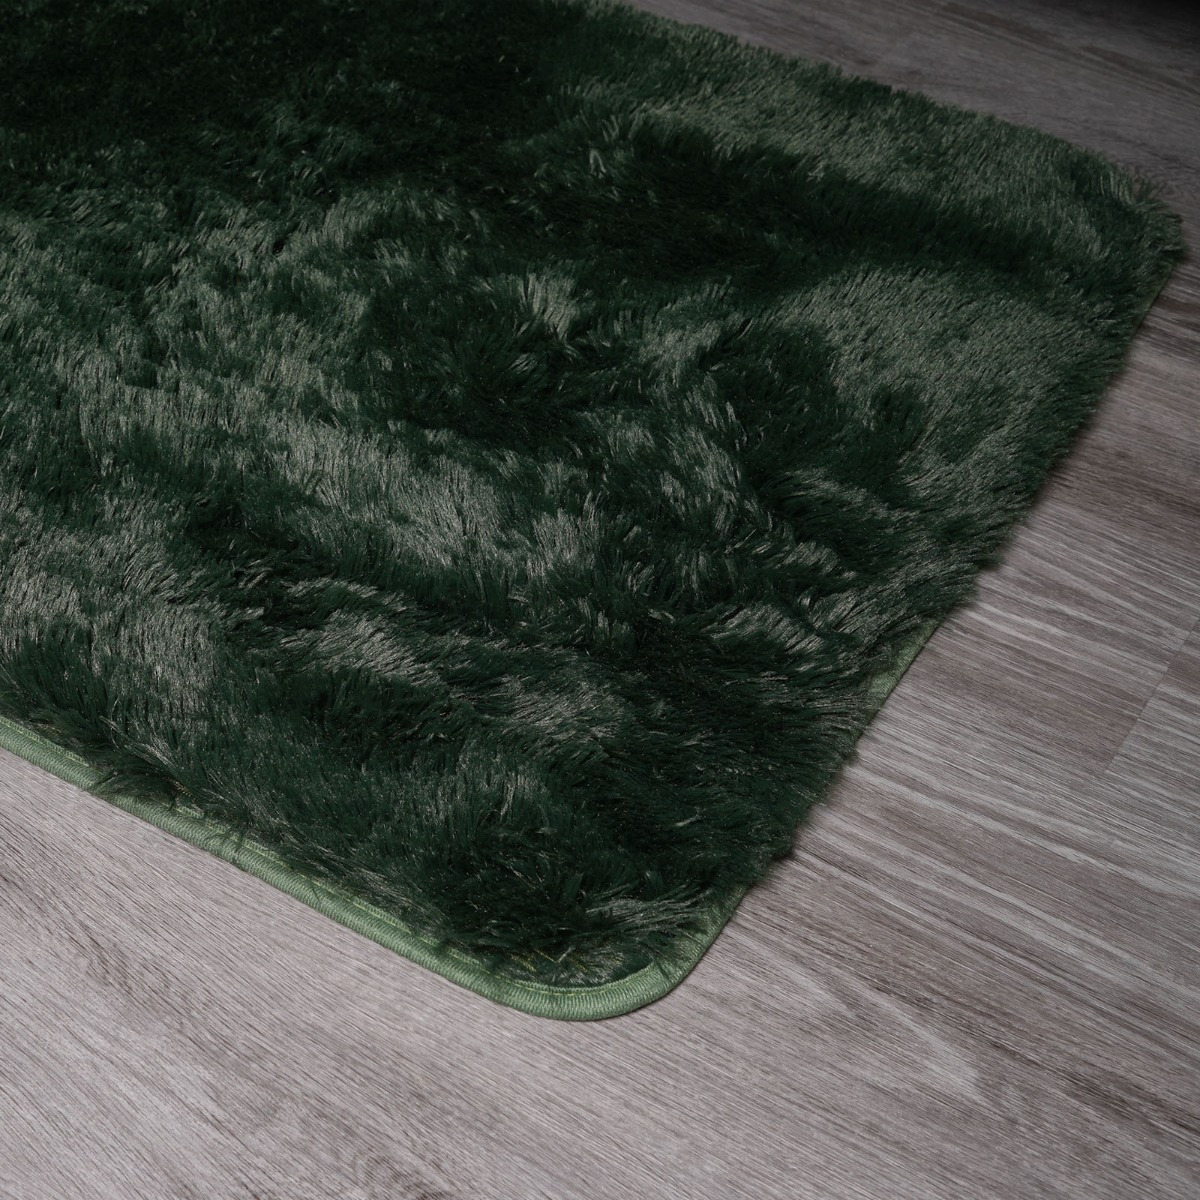 Sienna Fluffy Rug, Forest Green - 120 x 170cm>